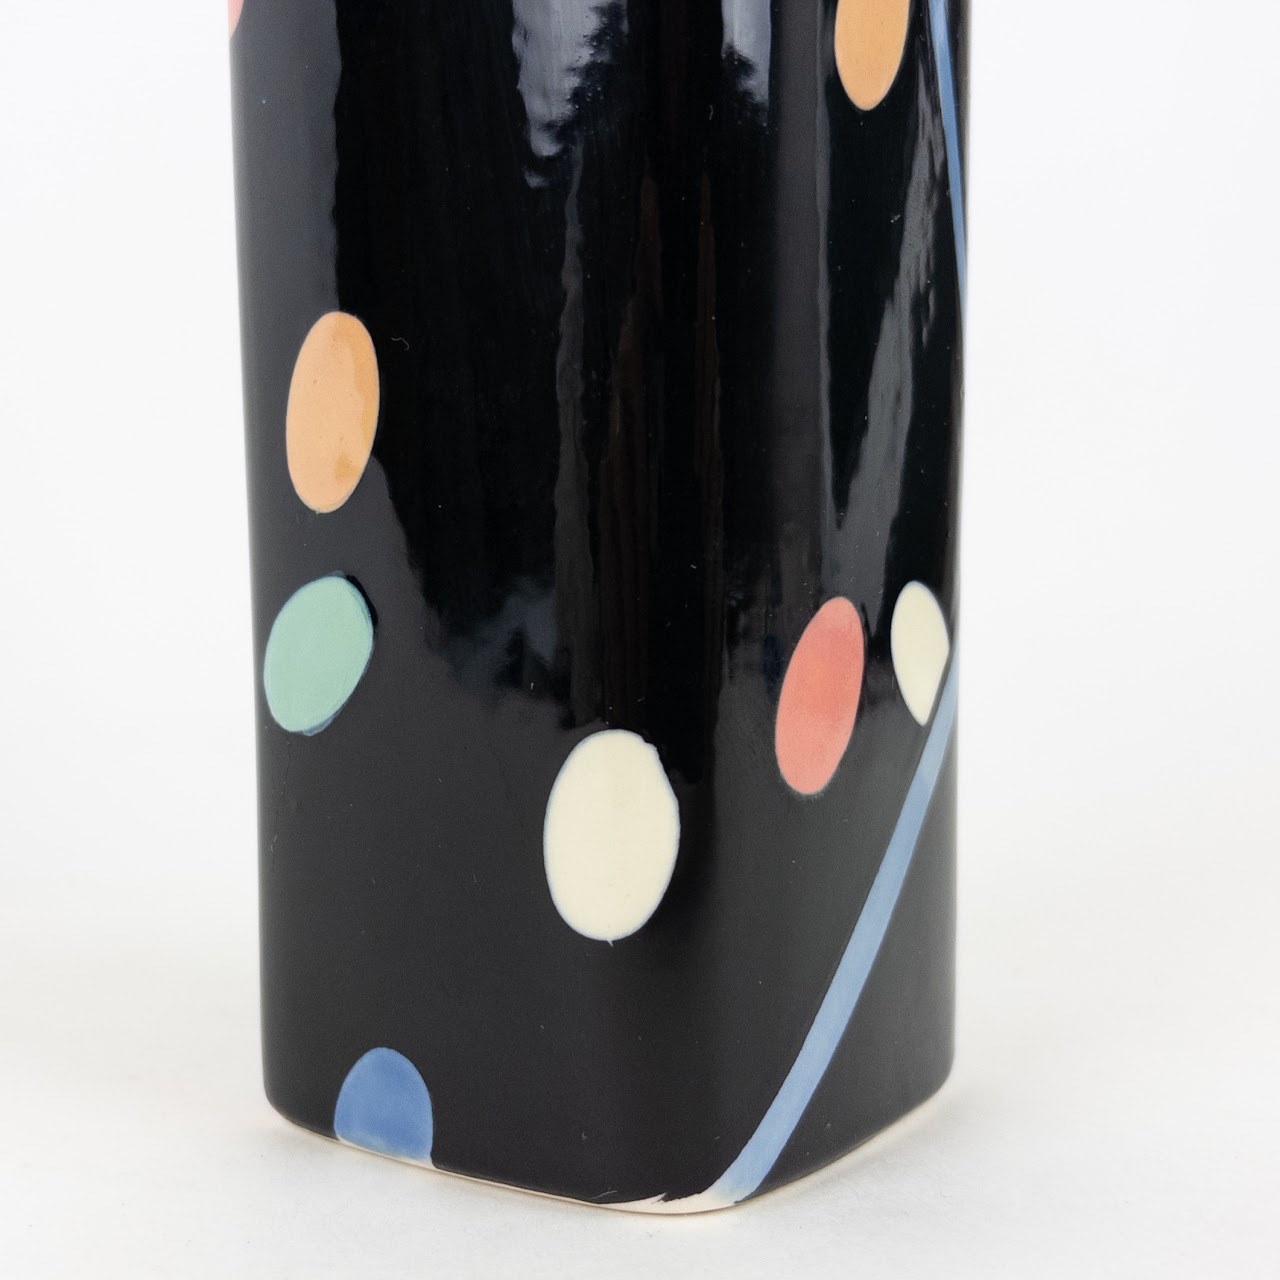 Tiffany & Co. Dorothy Hafner 80's Deco Styled Vase